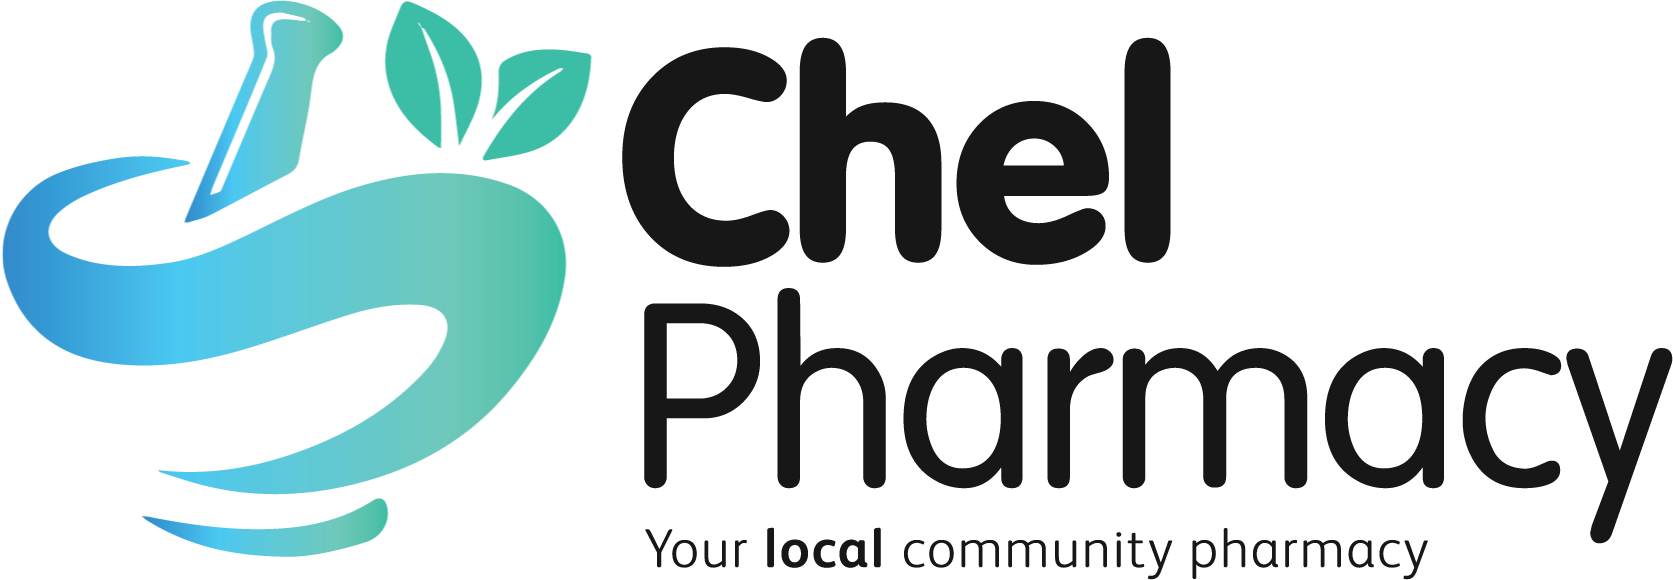 Chel Pharmacy Logo